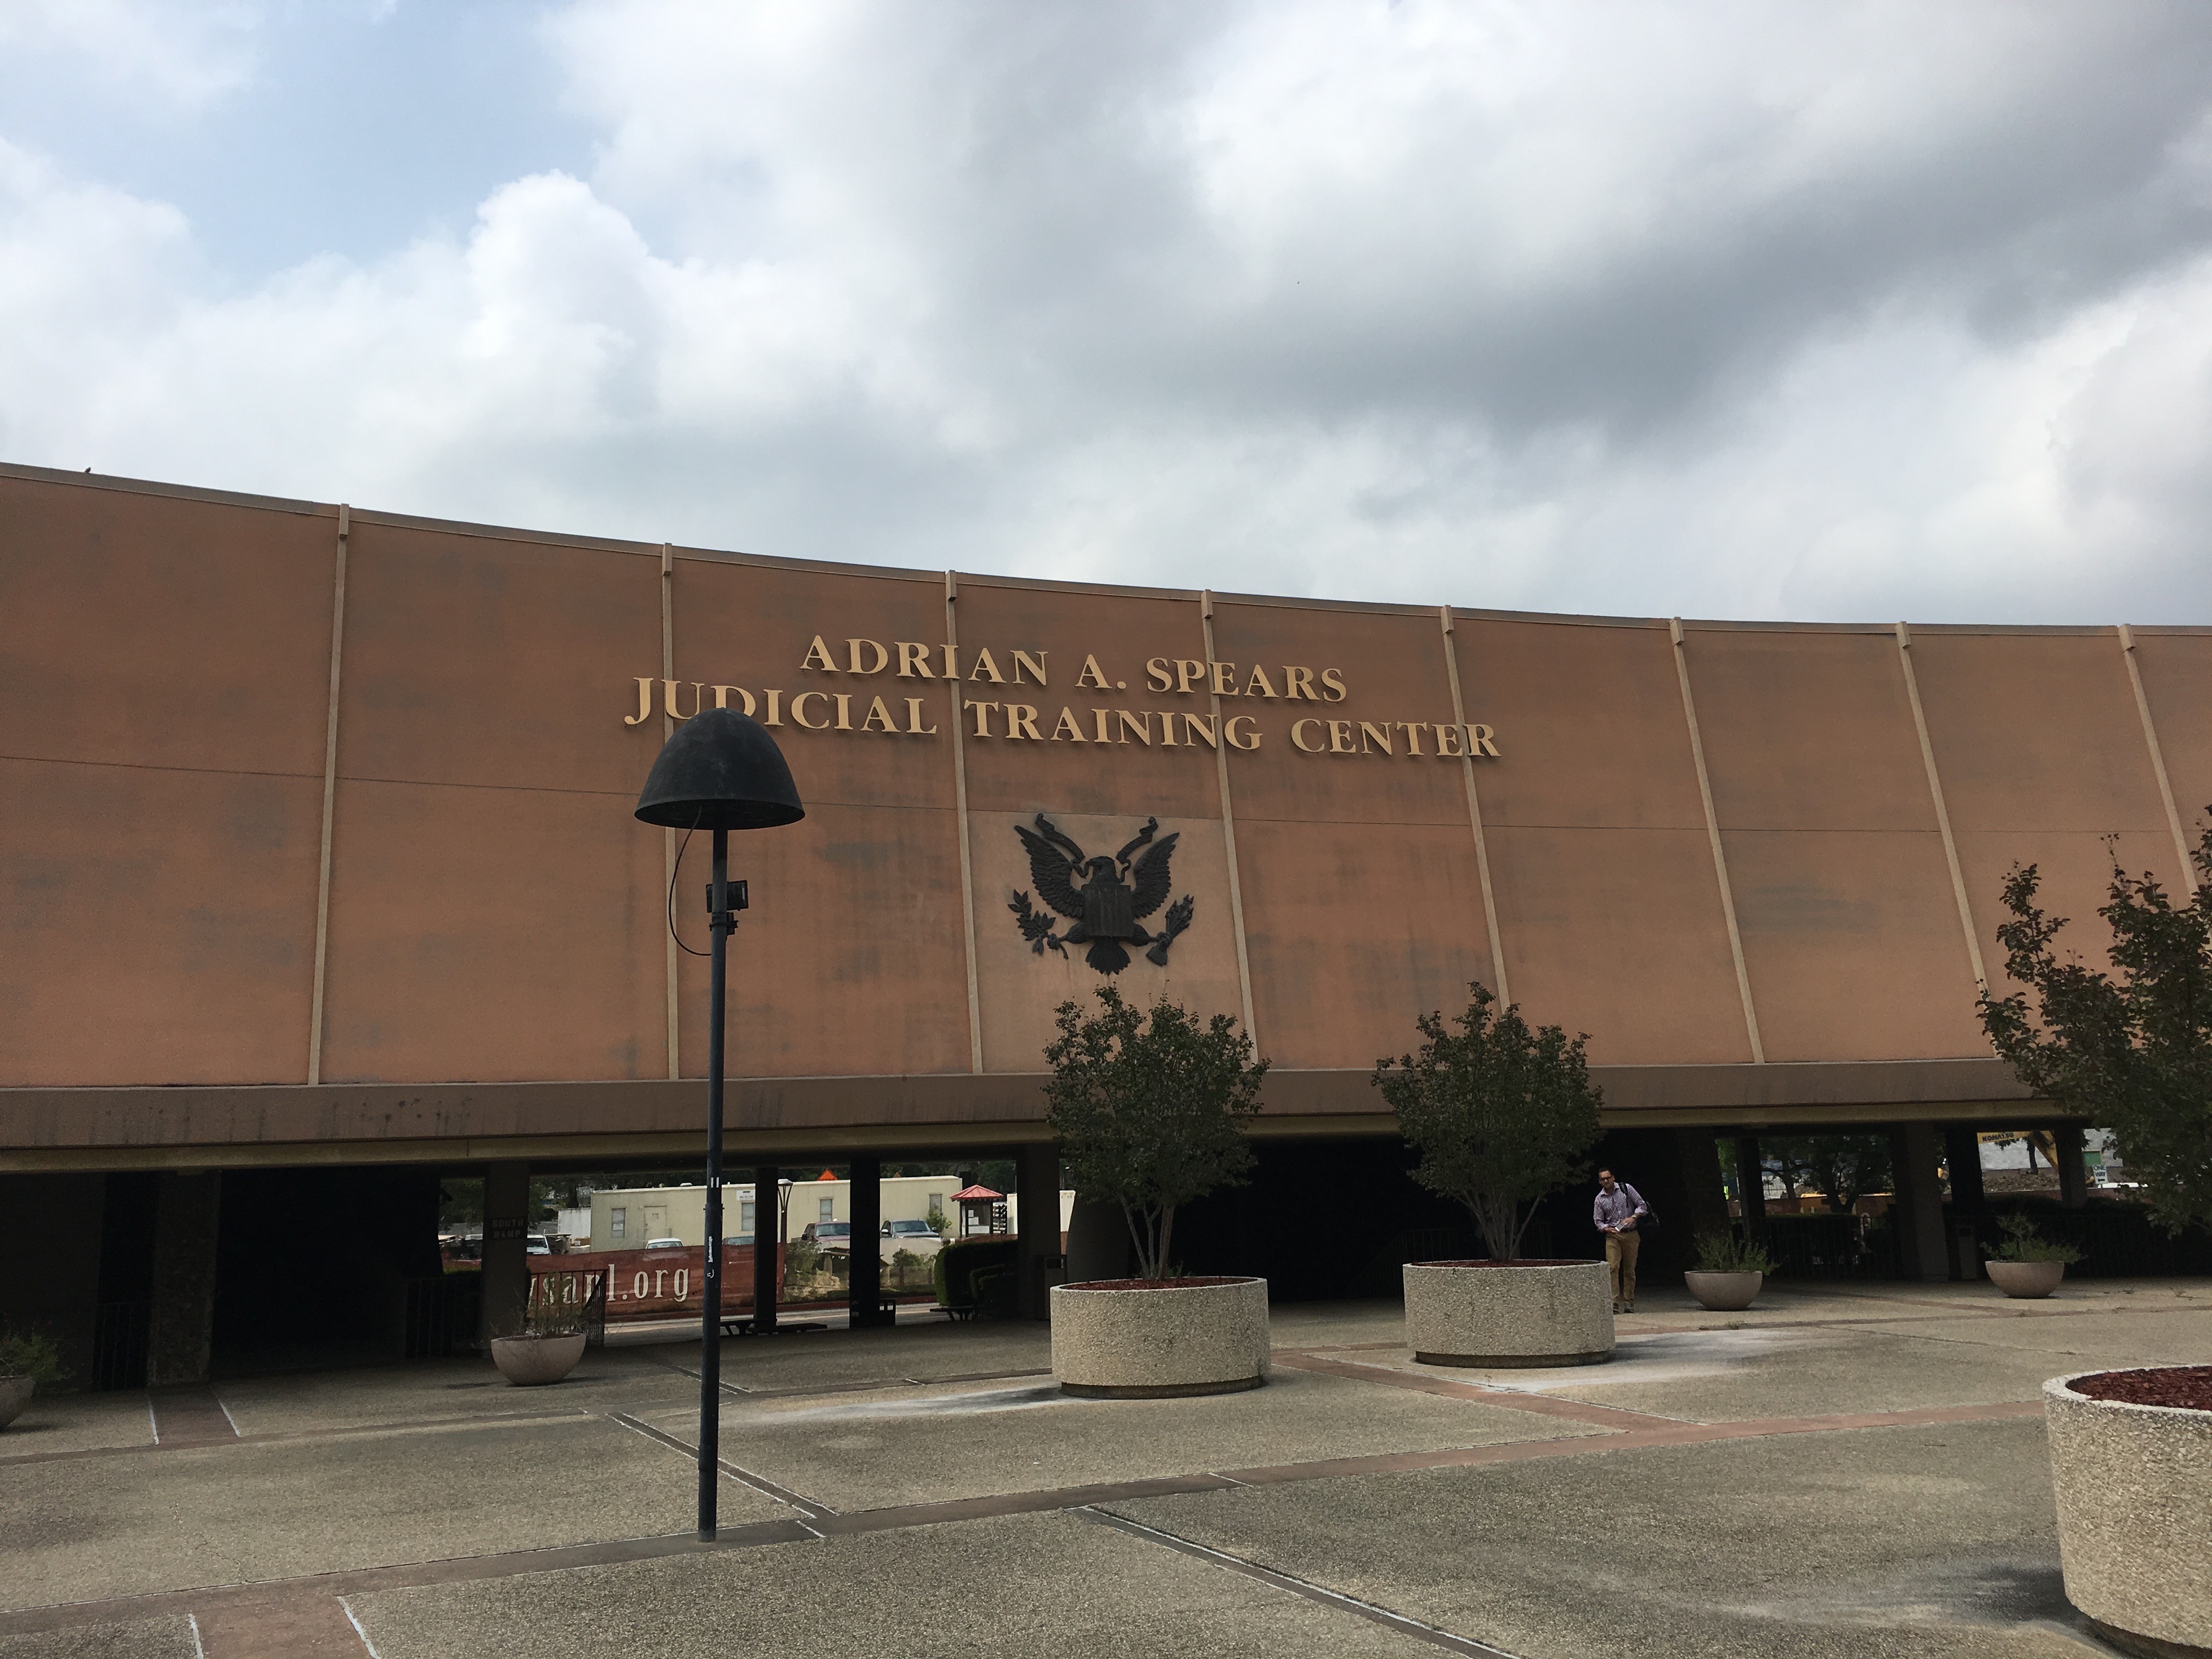 Adrian A. Spears Judicial Training Center